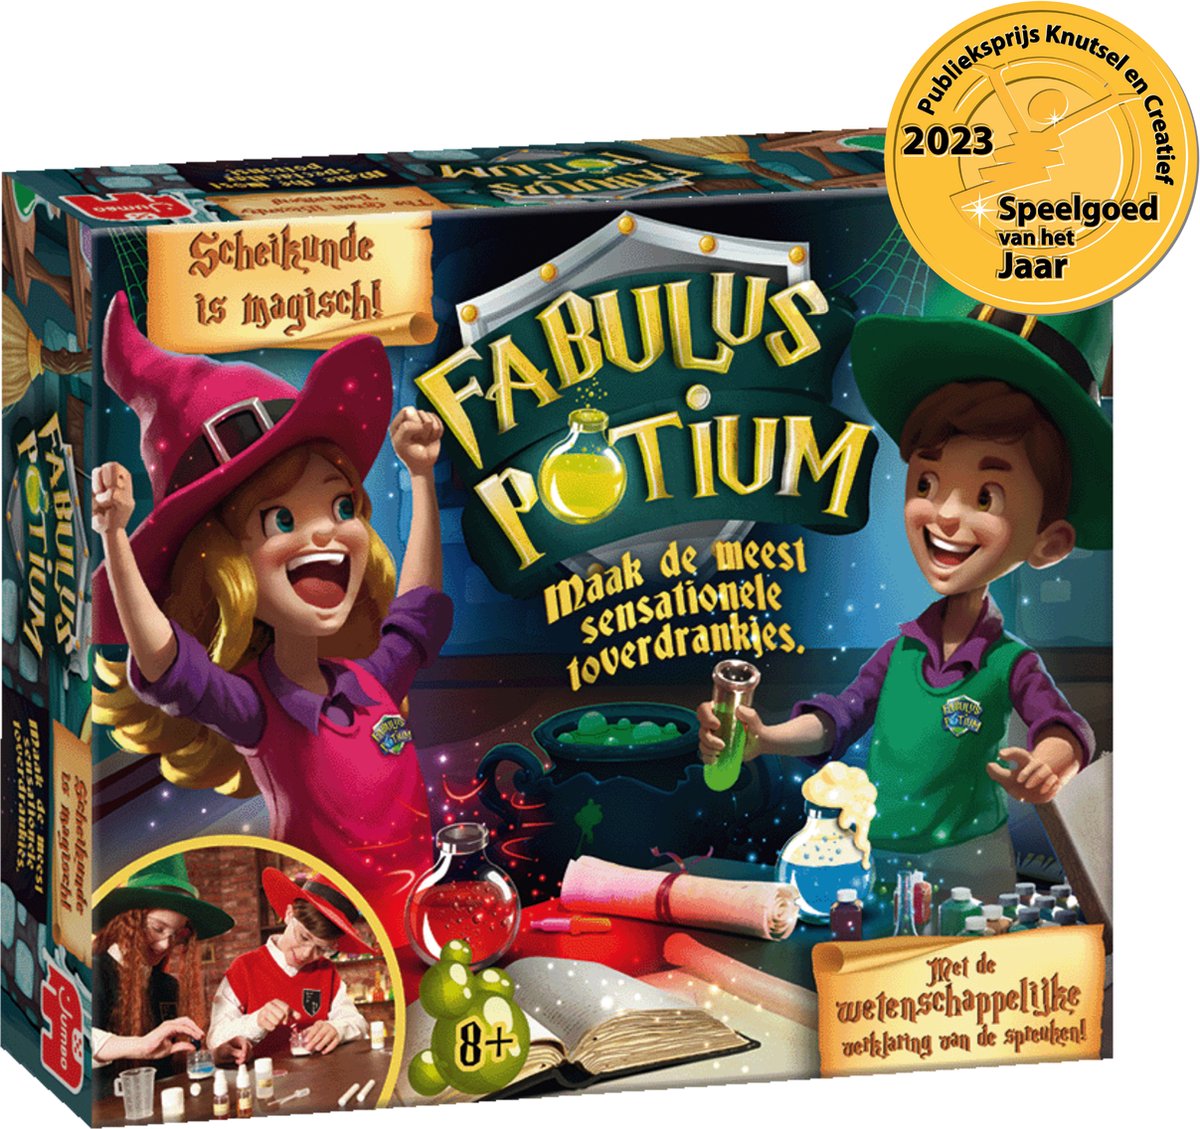 Fabulus potium, jeux educatifs